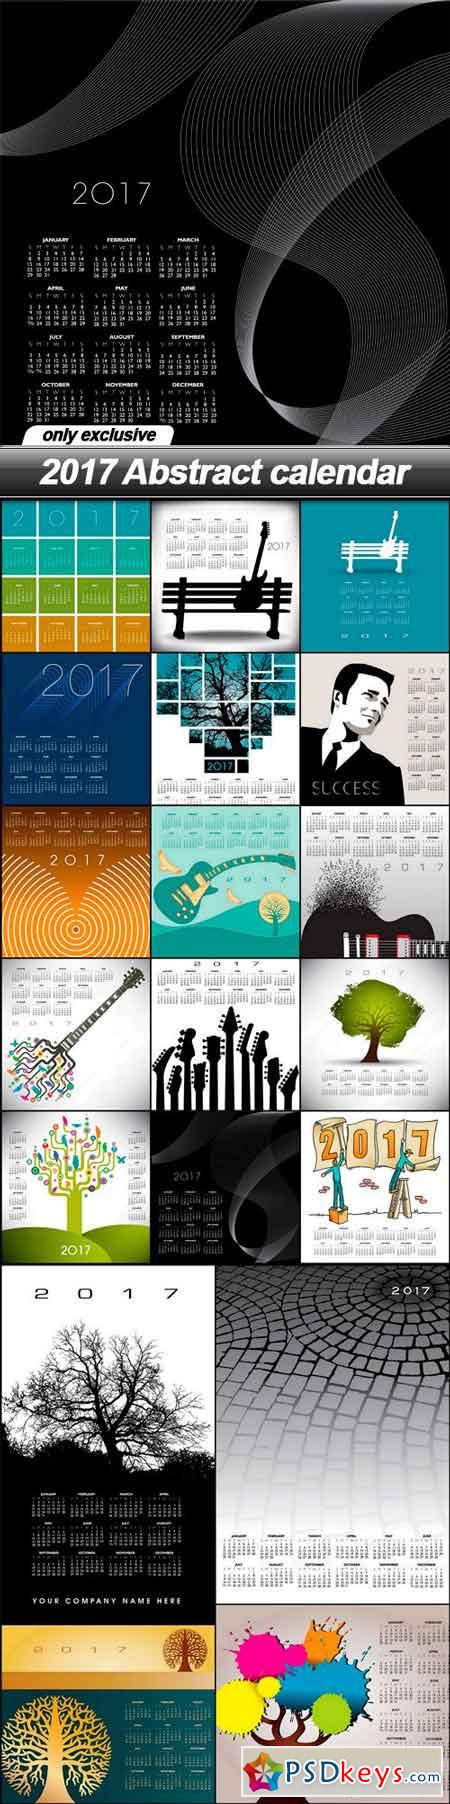 2017 Abstract calendar - 19 EPS